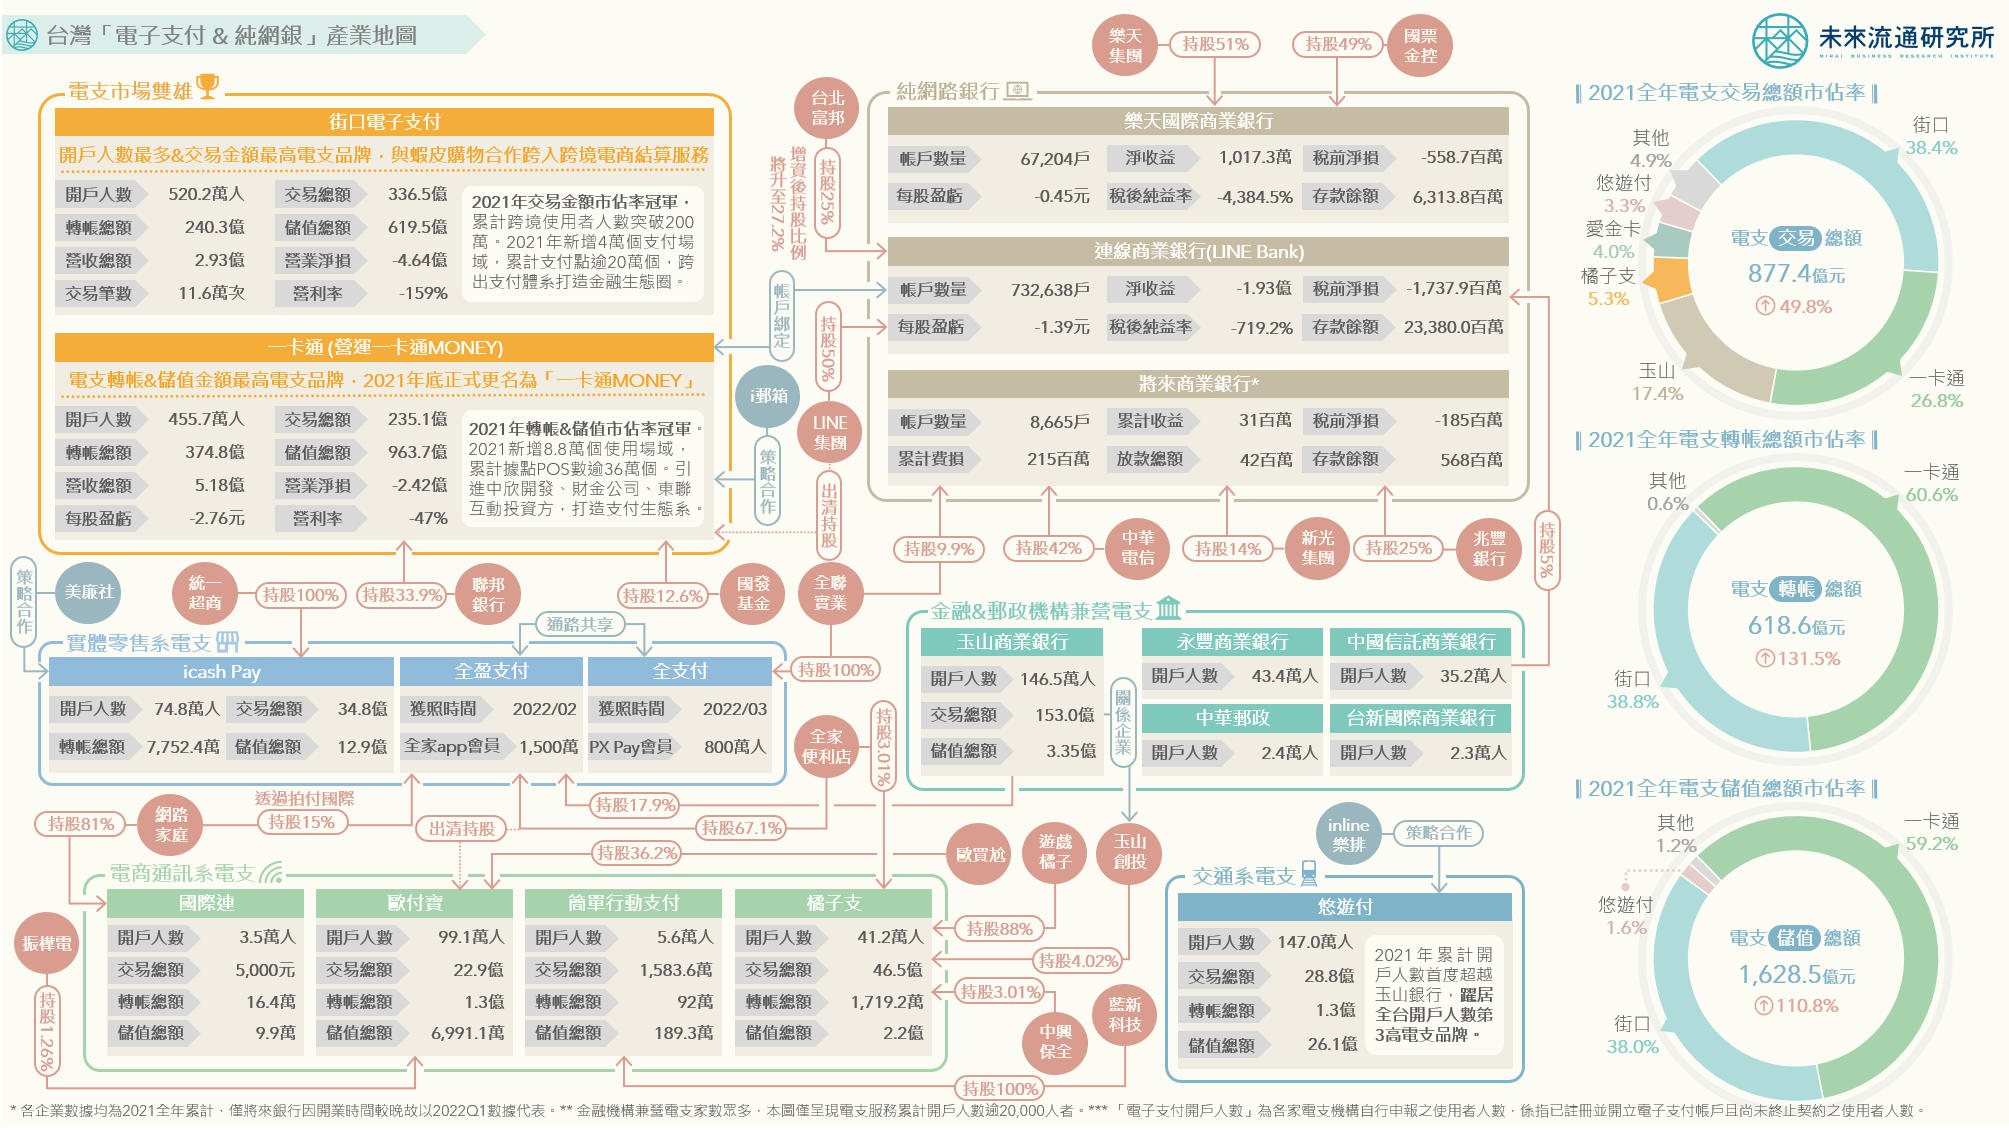 2022【產業地圖圖解】台灣「電子支付與純網銀」產業地圖